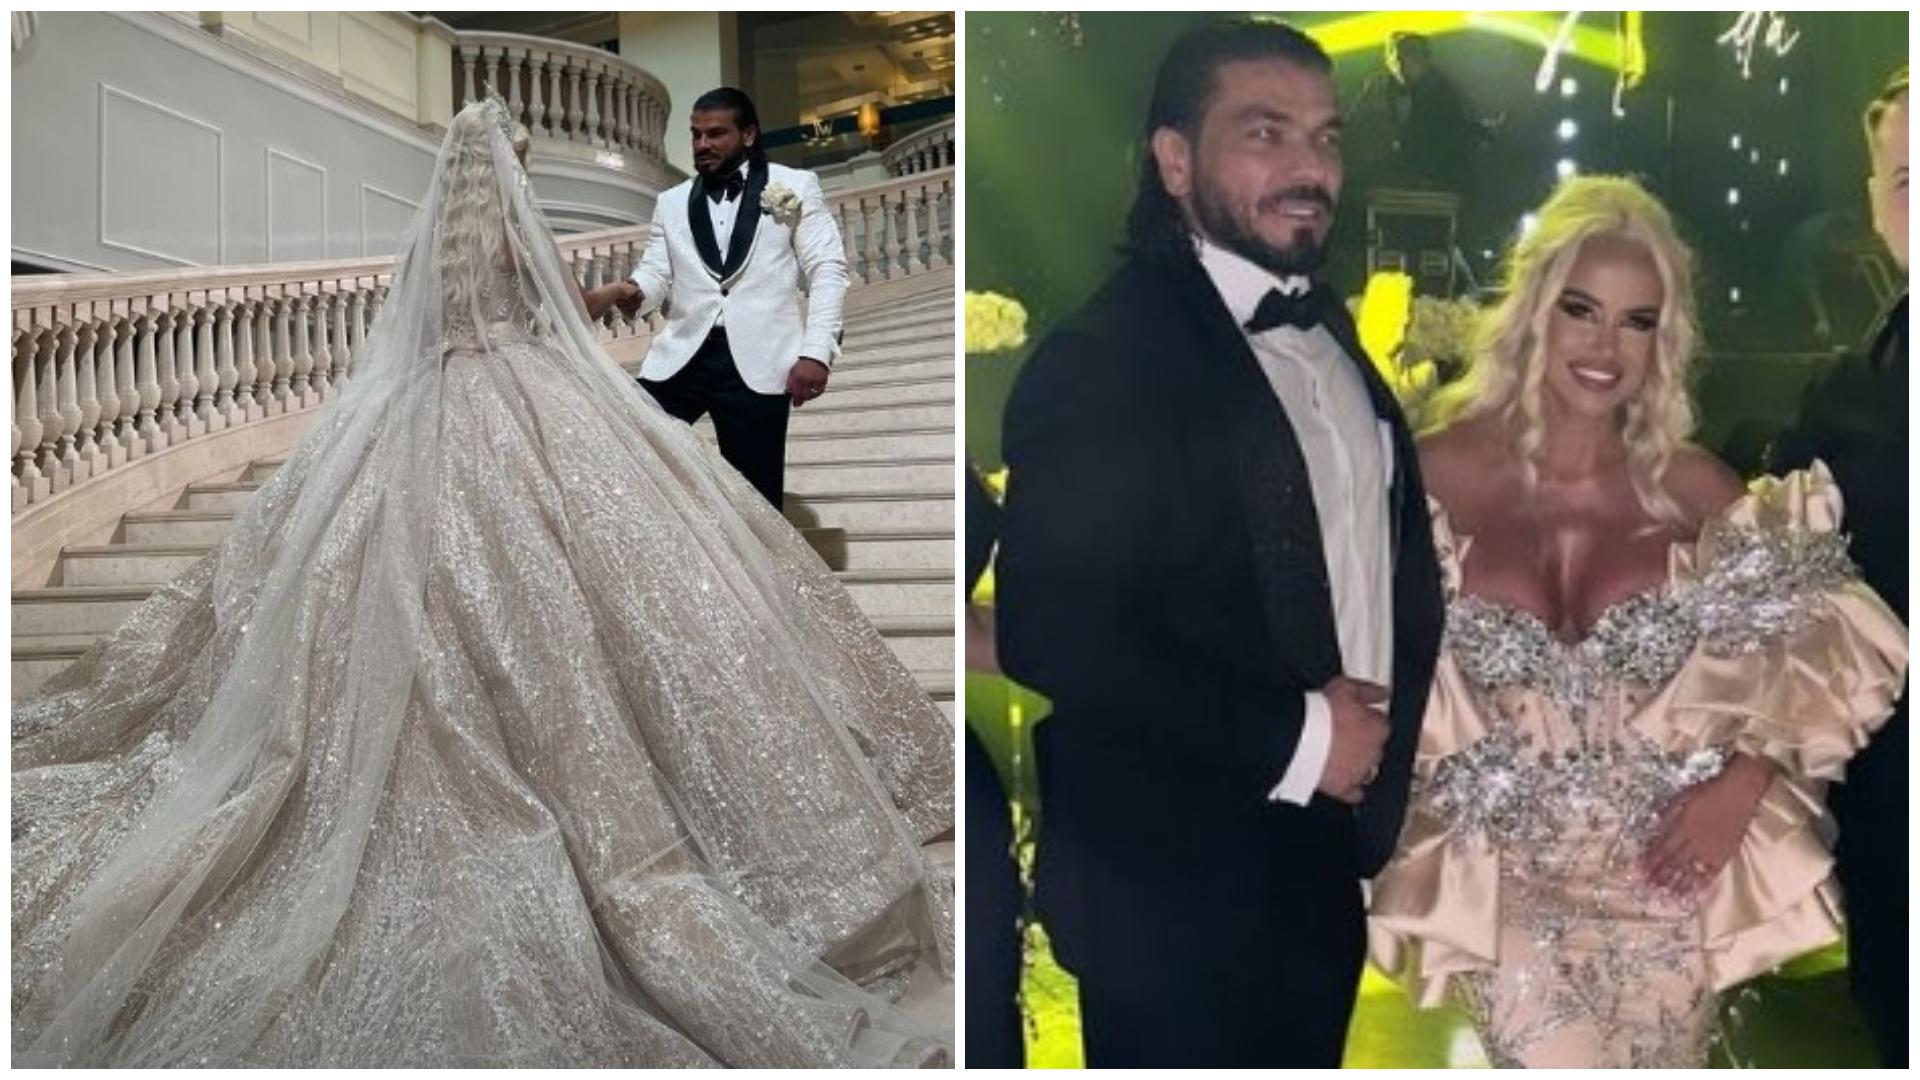 Colaj cu Anda Adam și soțul ei, Yosif Mohaci, la nuntă în două ipostaze diferite